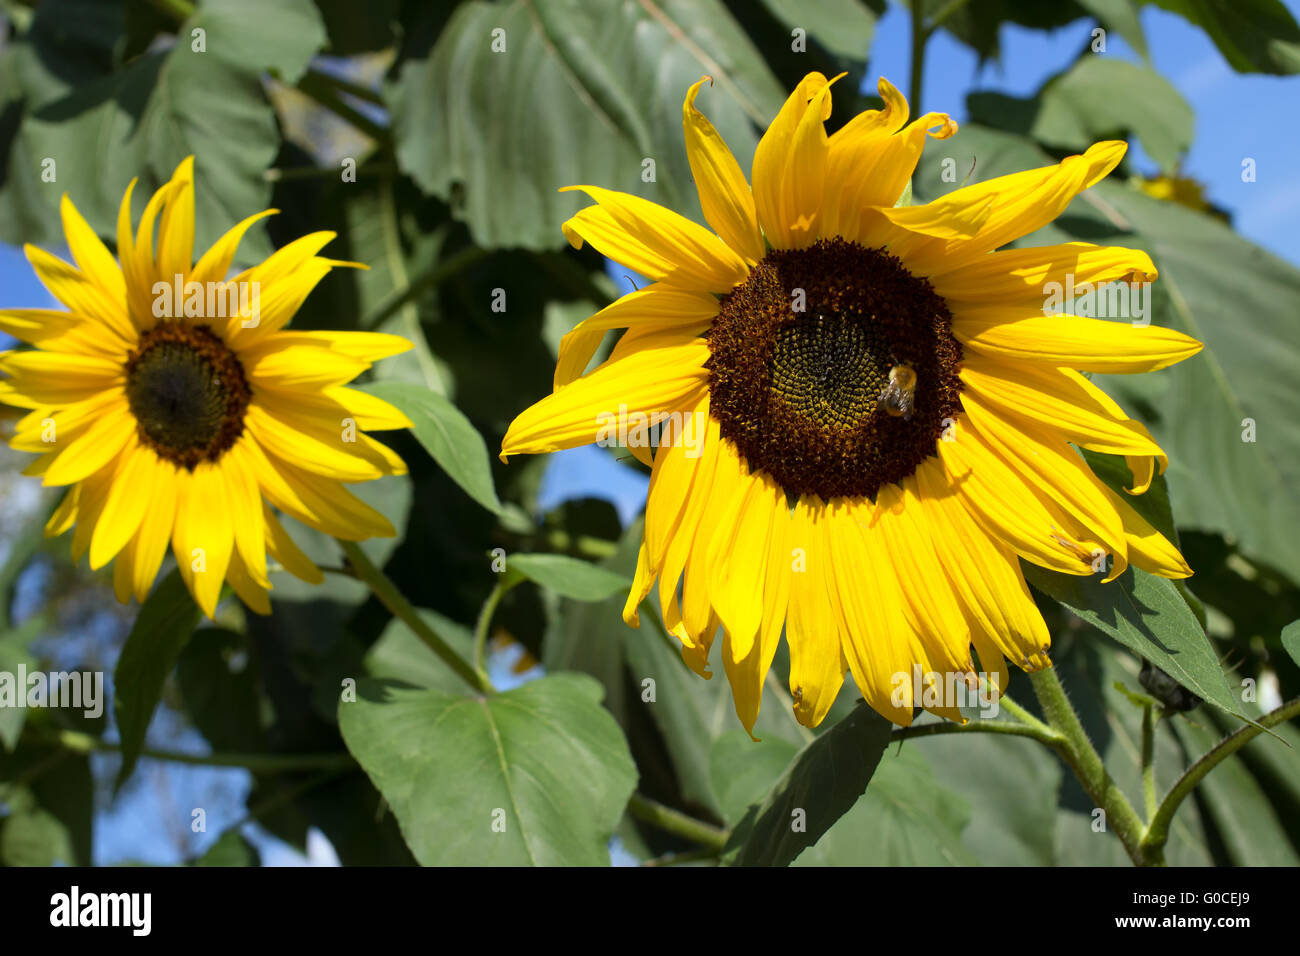 Sunflowers 009 Stock Photo